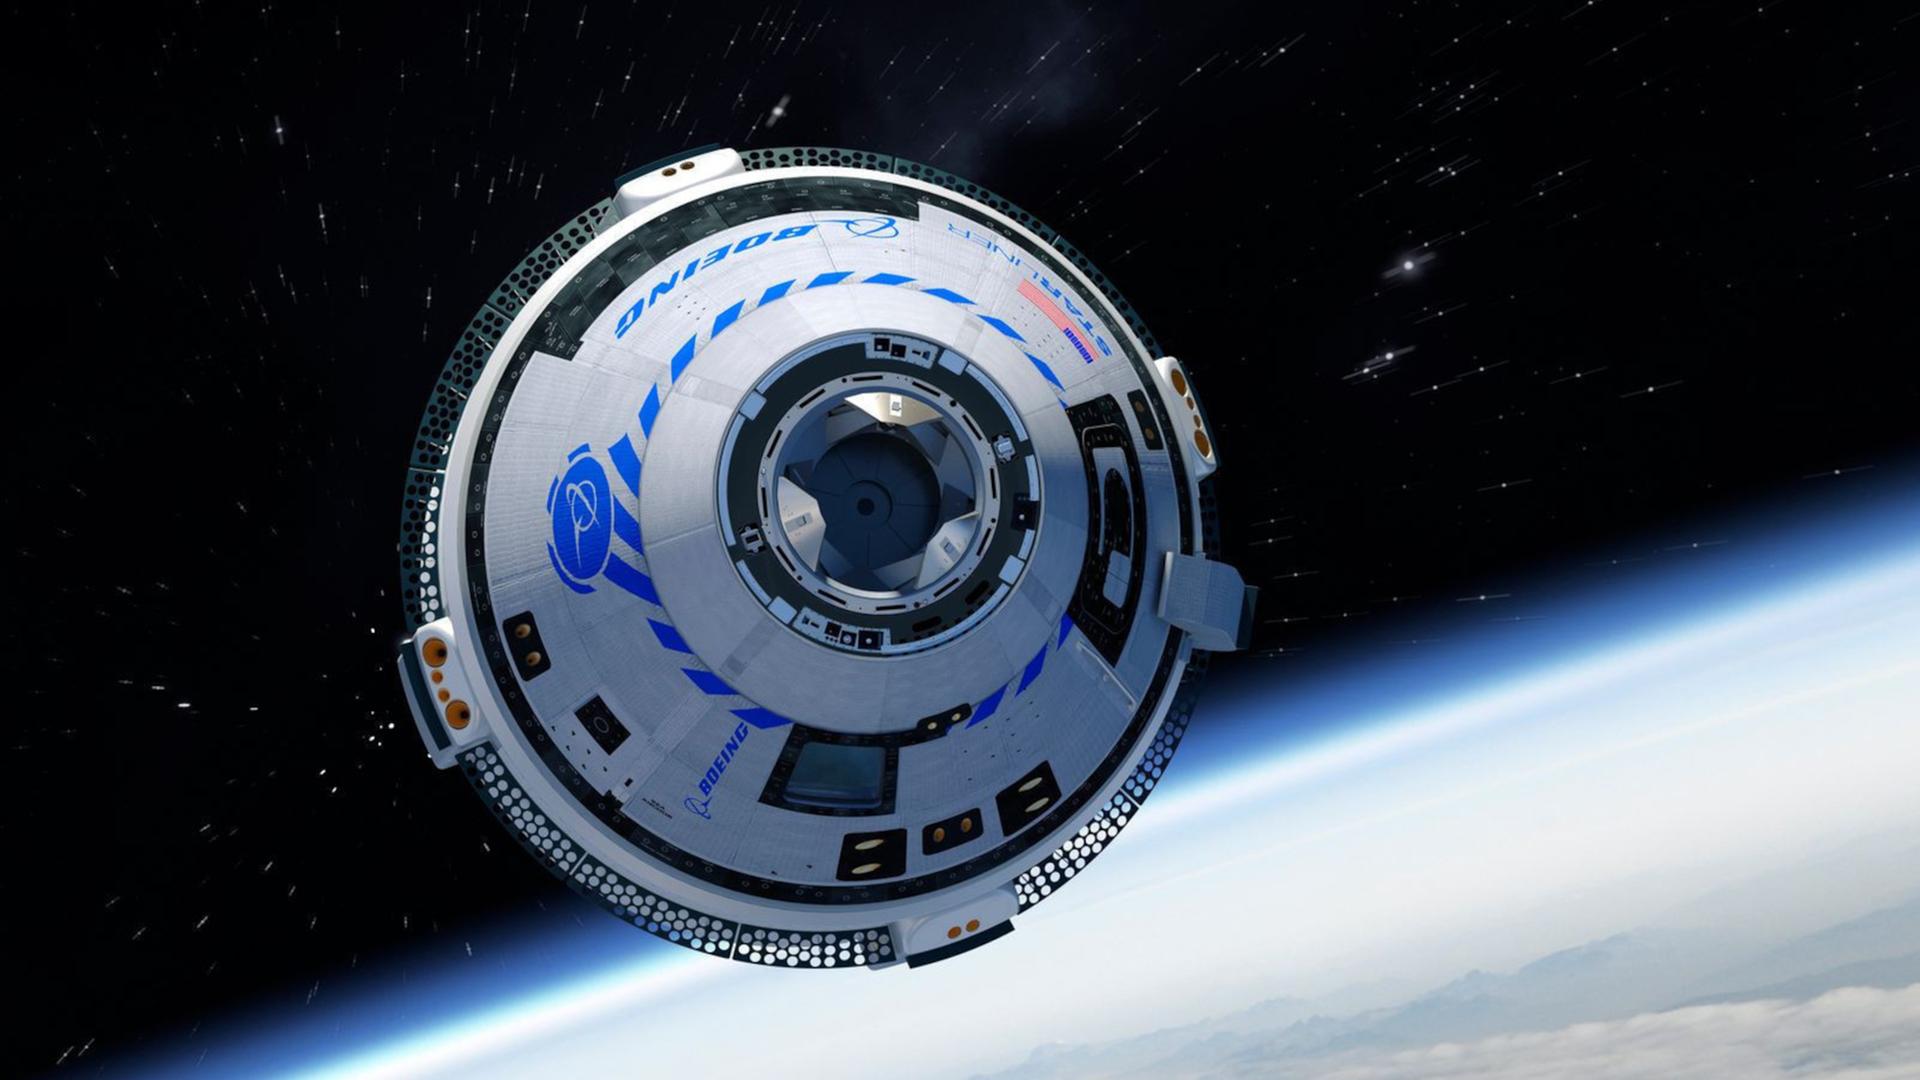 Die Raumkapsel Starliner von Boeing in der Erdumlaufbahn (Illustration) – beim Erstflug werden zwei Personen zur Besatzung gehören. (Foto: Boeing)